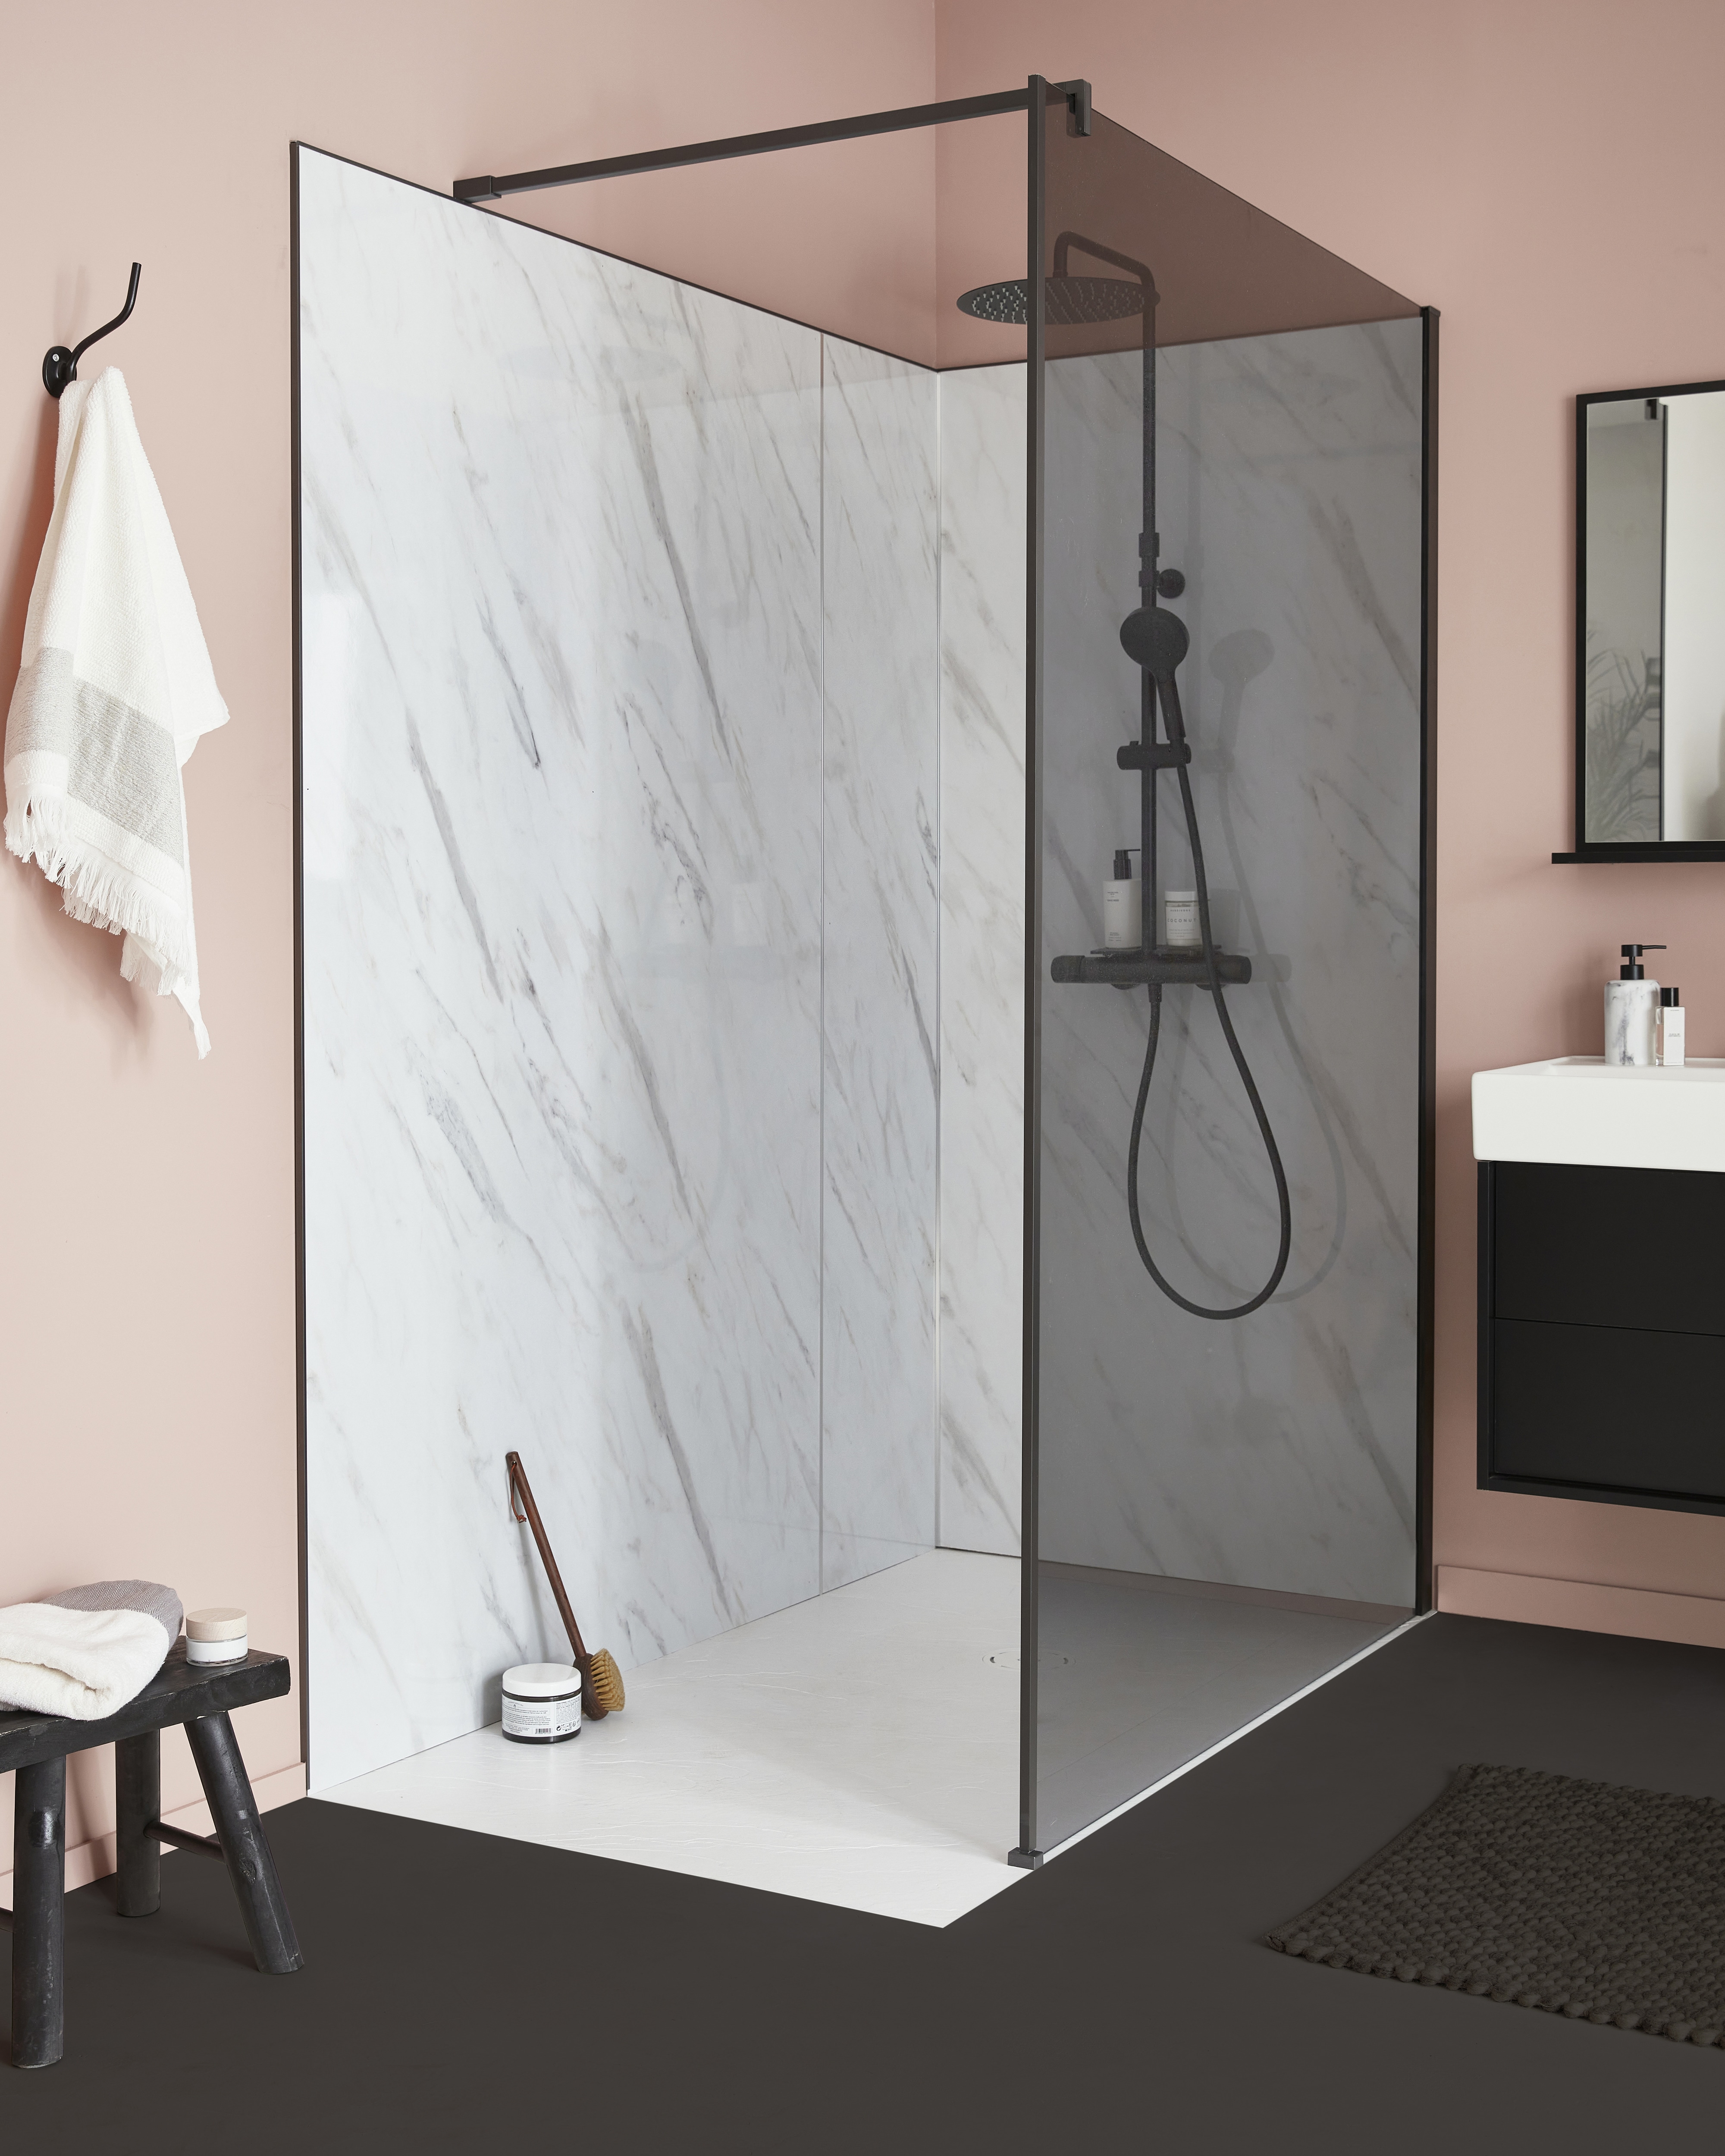 PANOLUX propose tous les styles pour votre salle de bains